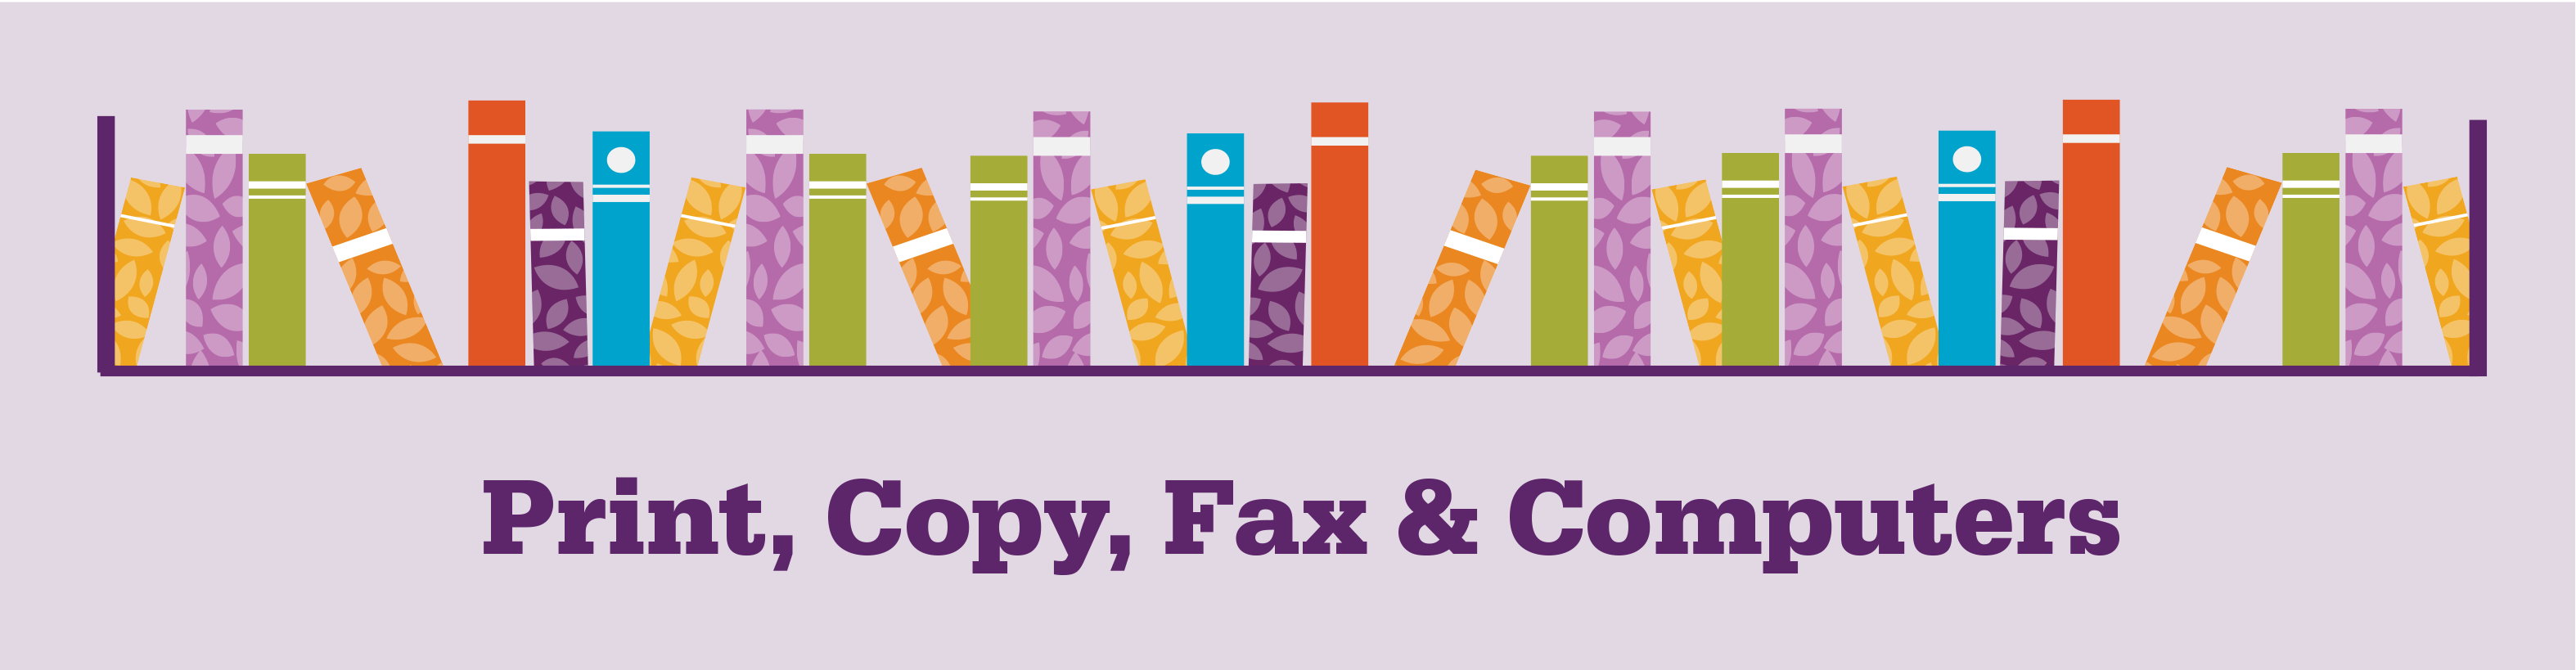 Print, Copy, Fax & Computers